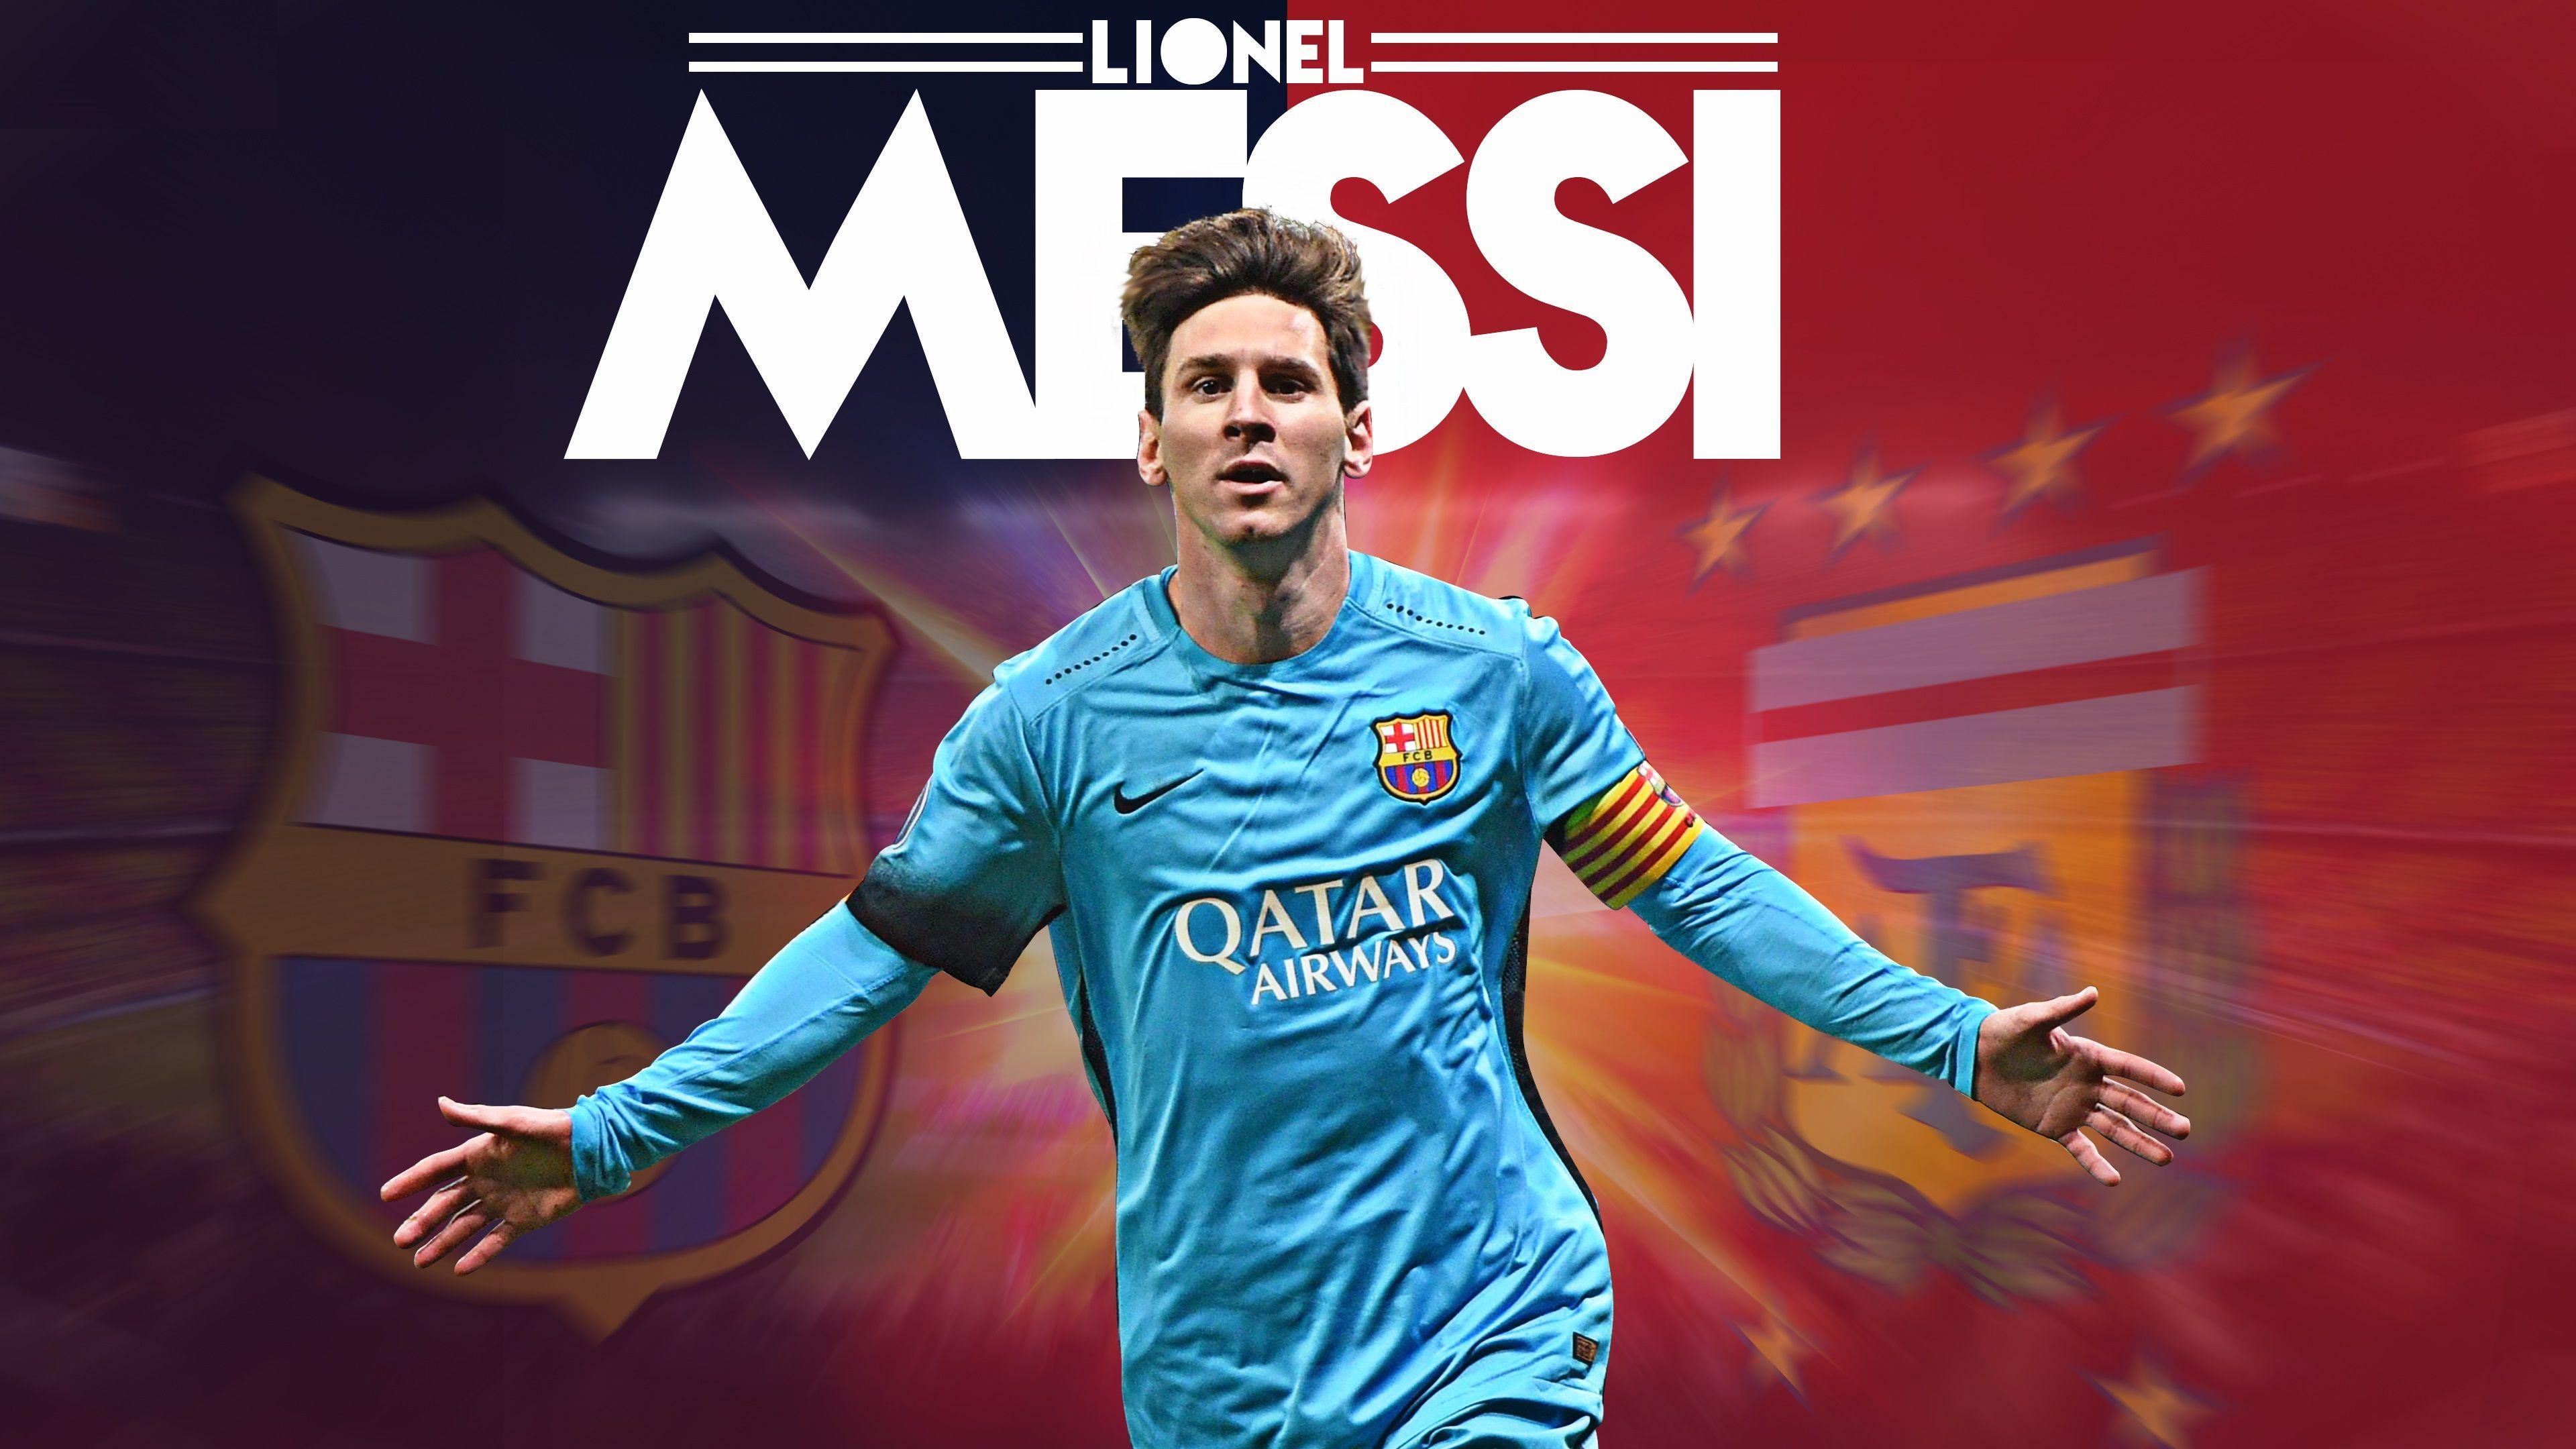 3840x2160 Hình nền Lionel Messi 2017